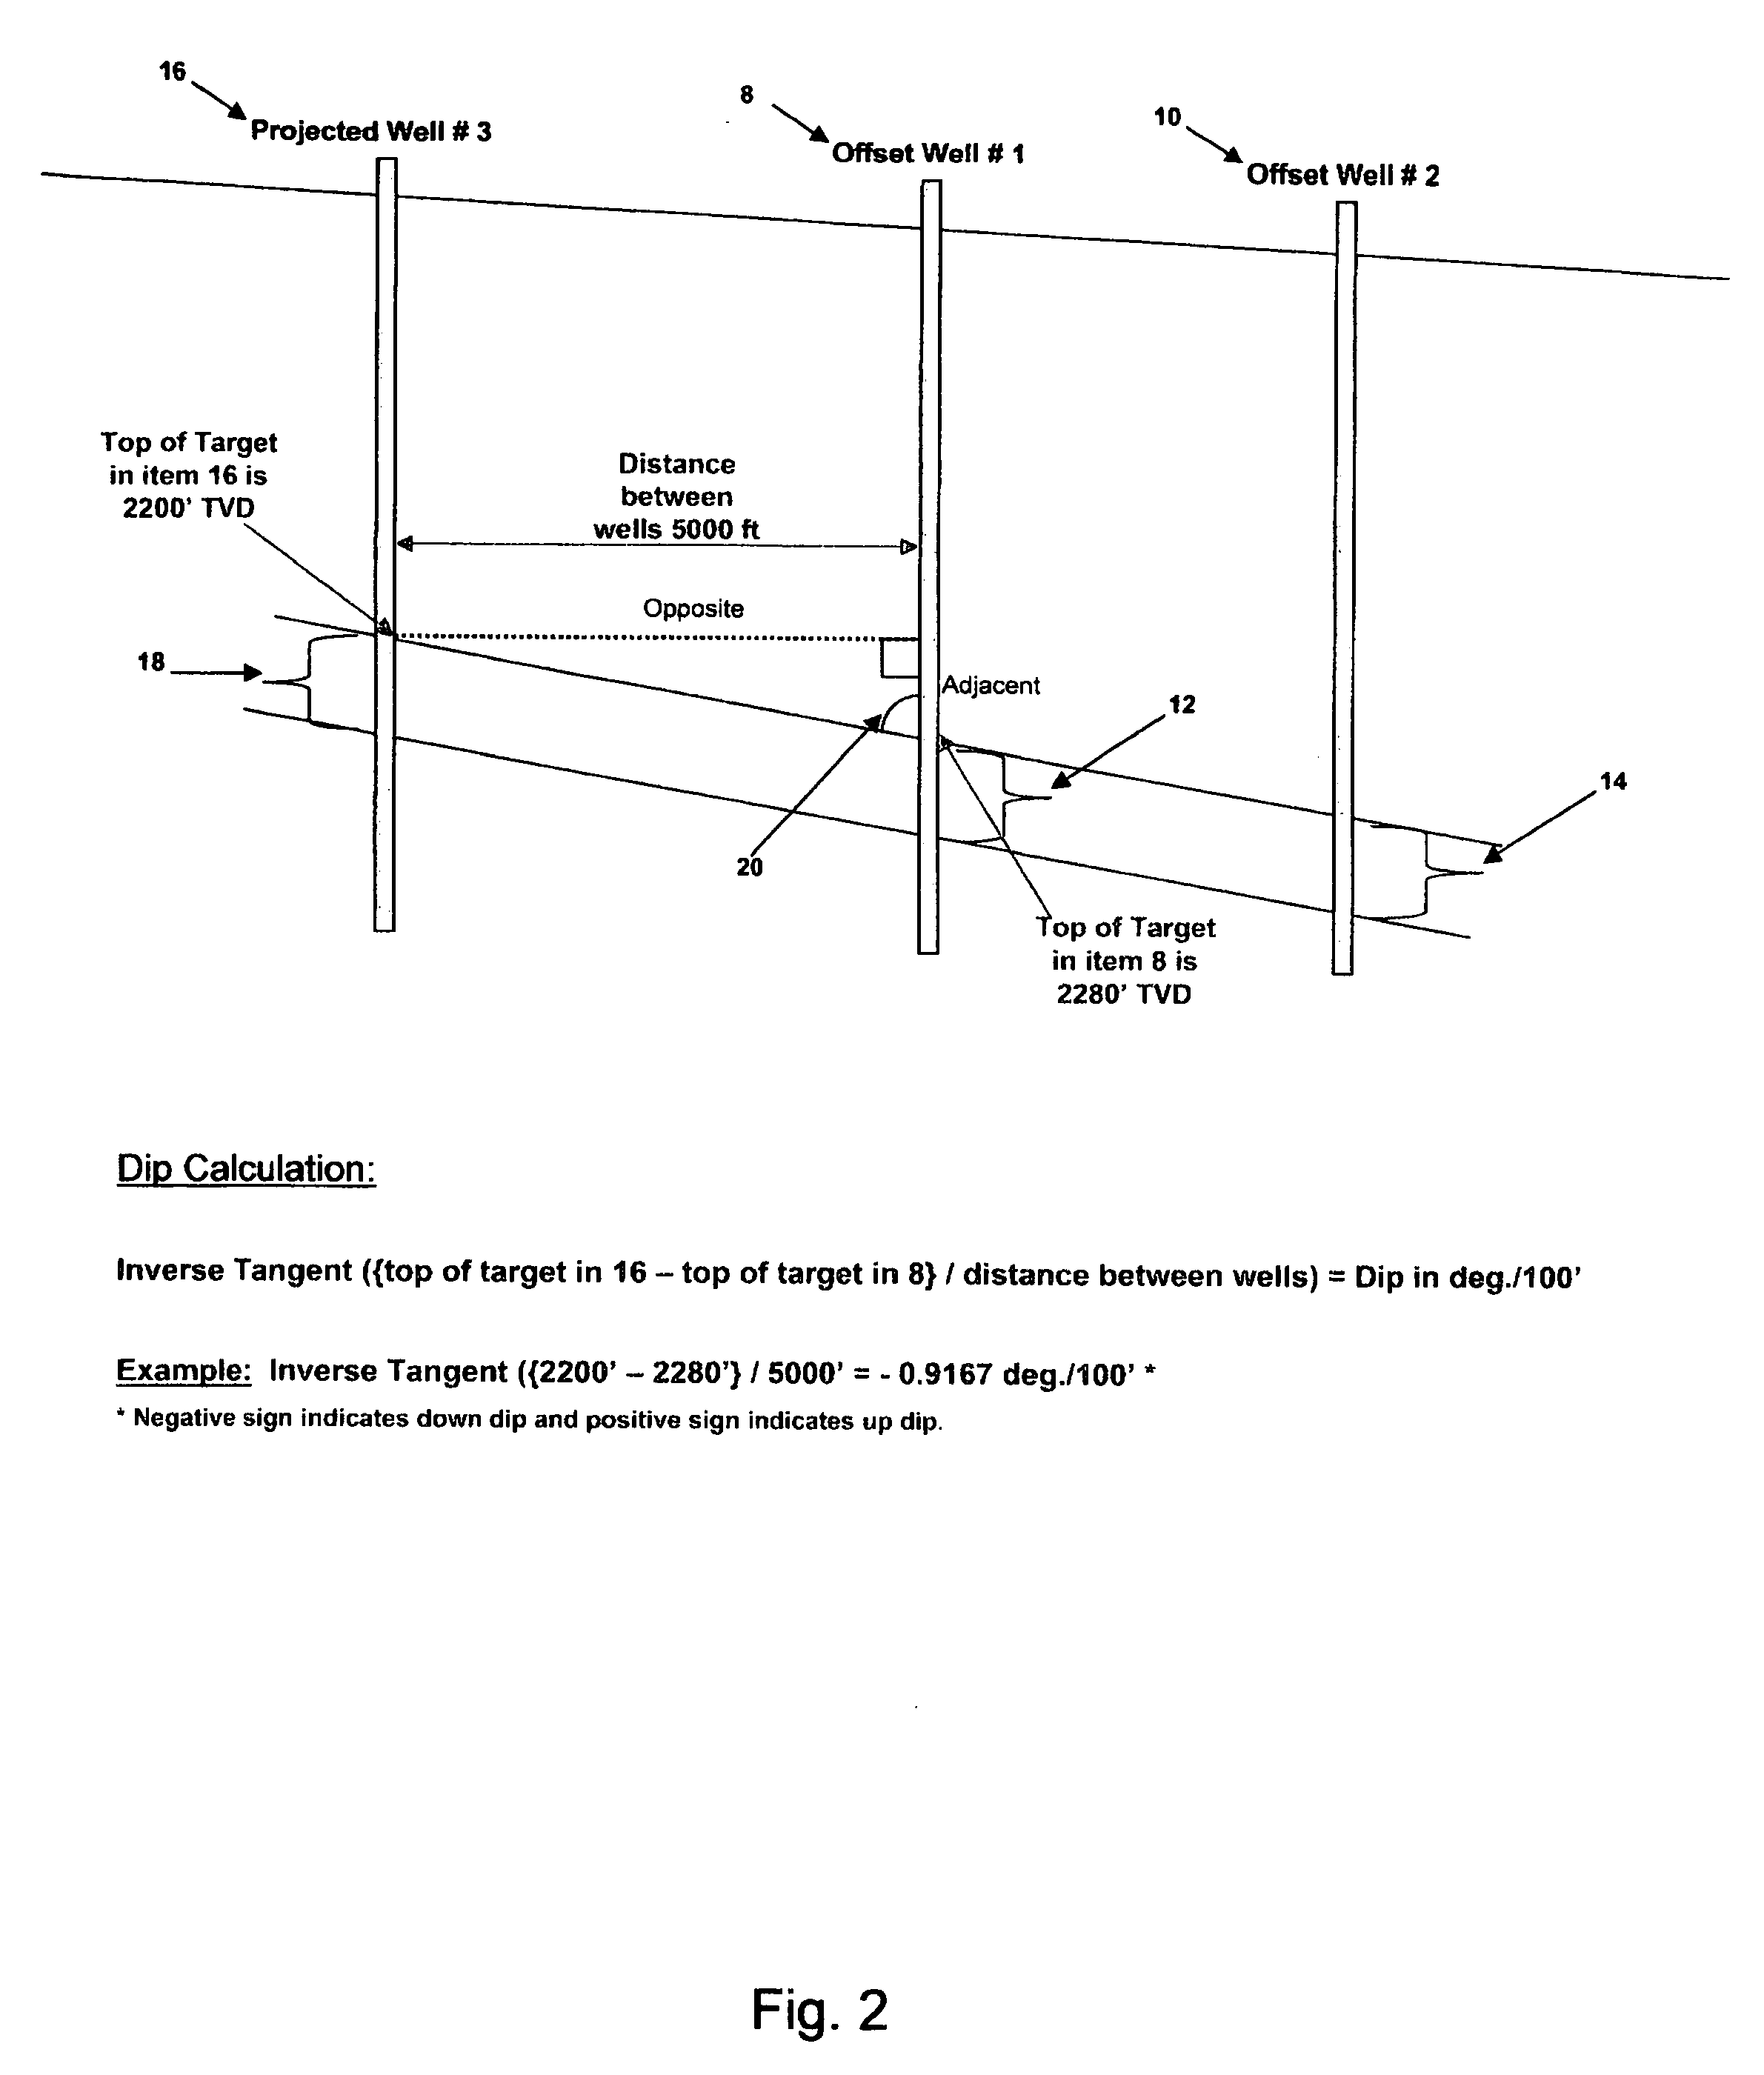 Formation dip geo-steering method